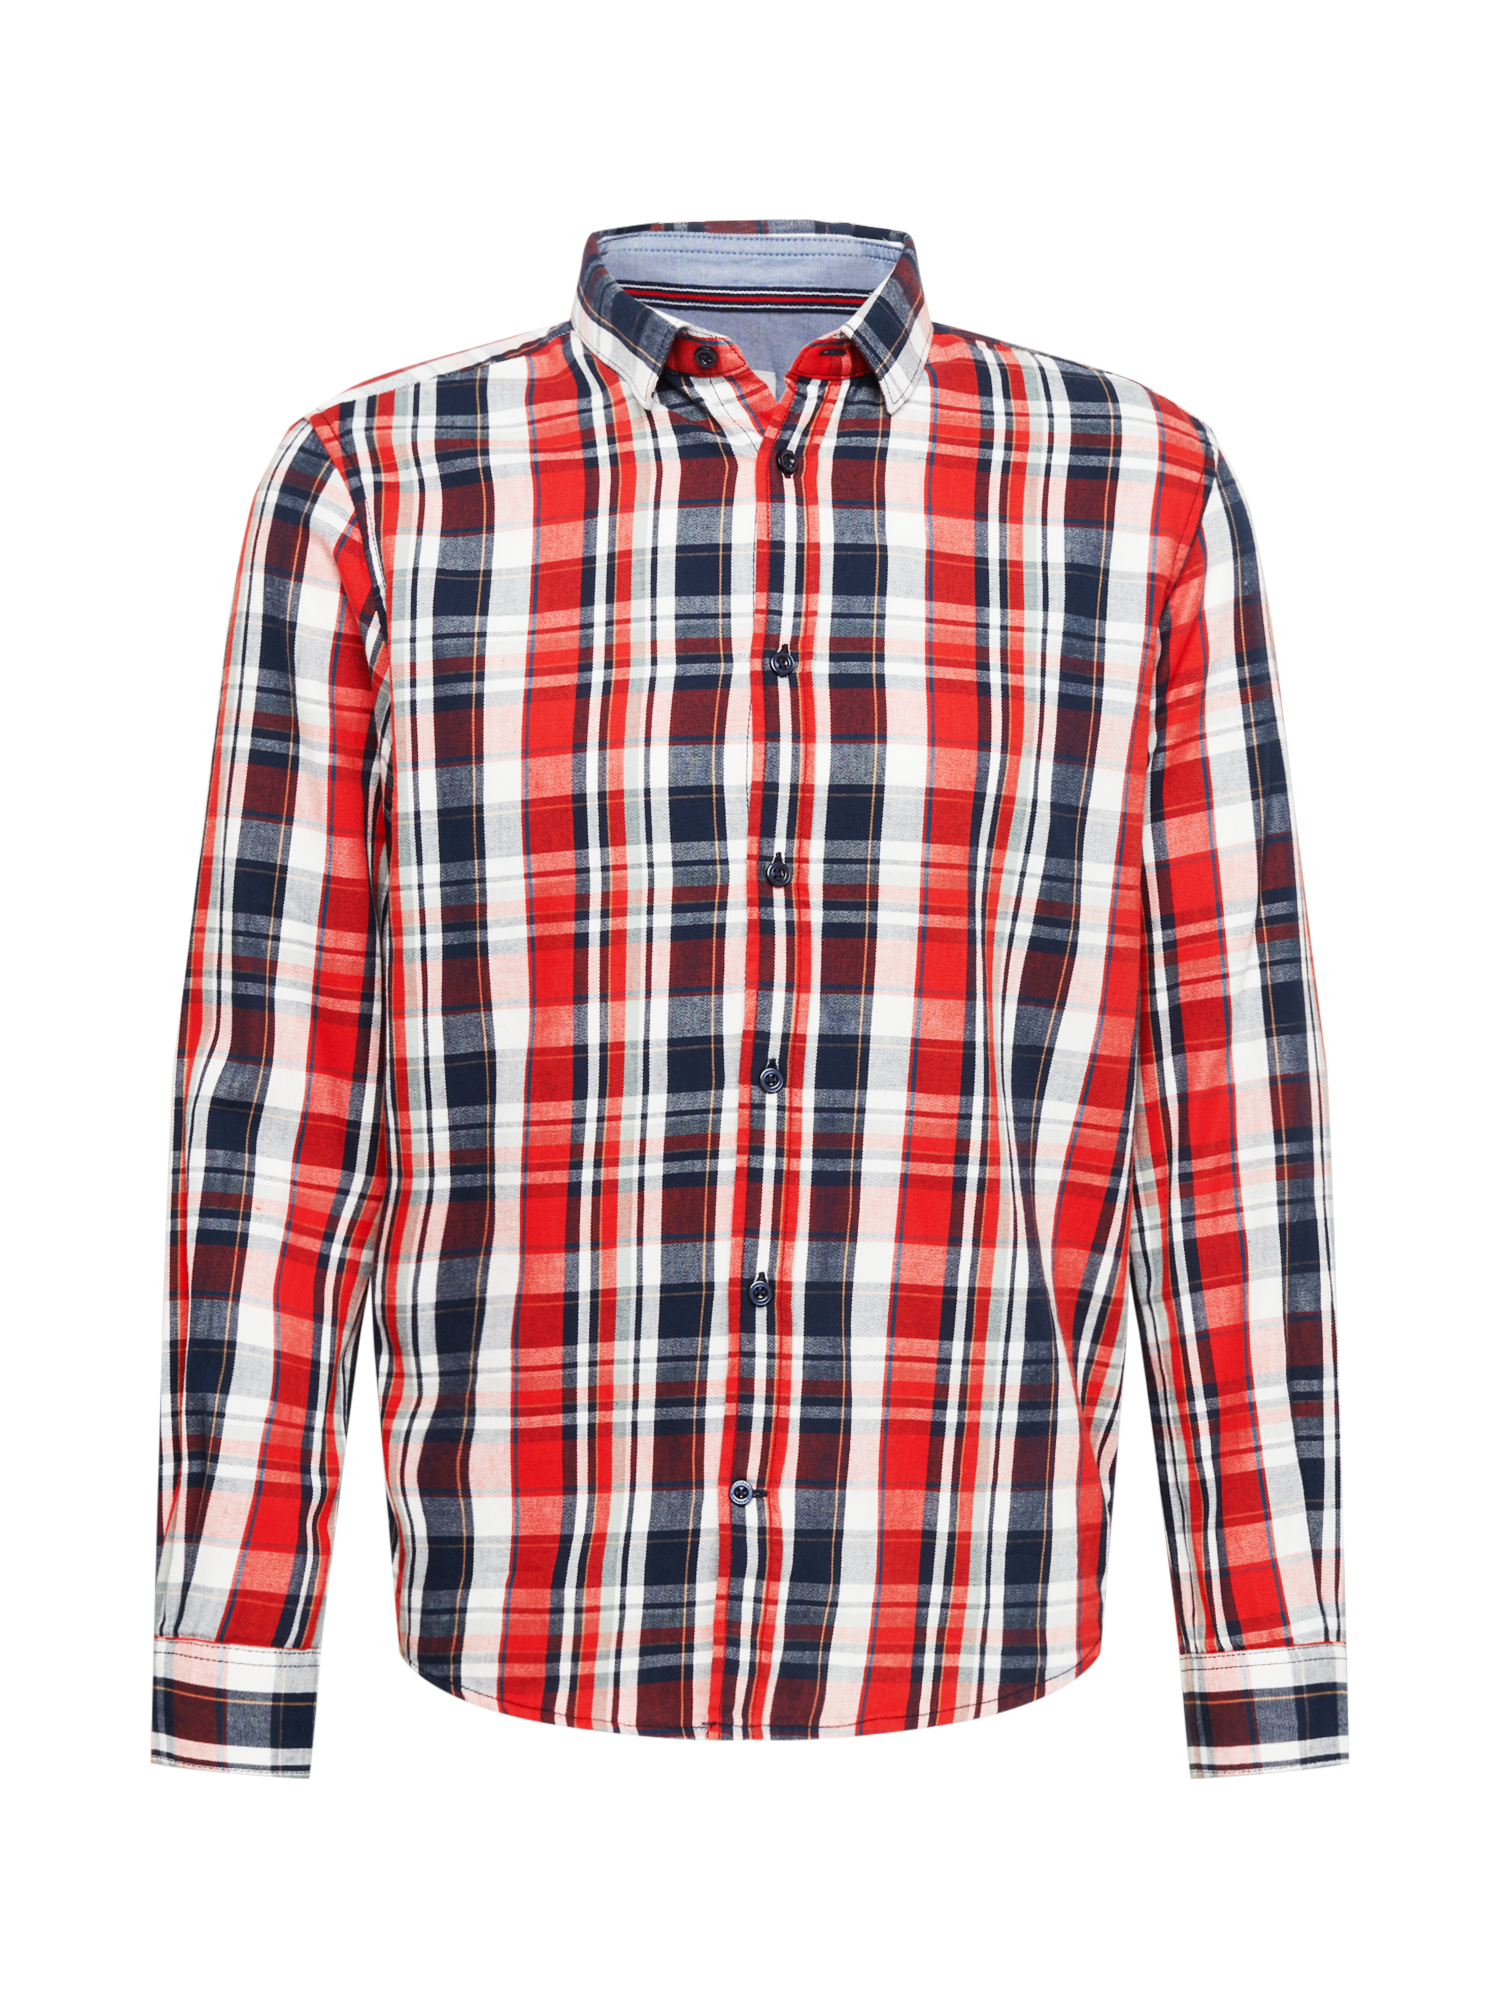 HRF19 Plus size TOM TAILOR Koszula w kolorze Czerwony, Niebieskim 